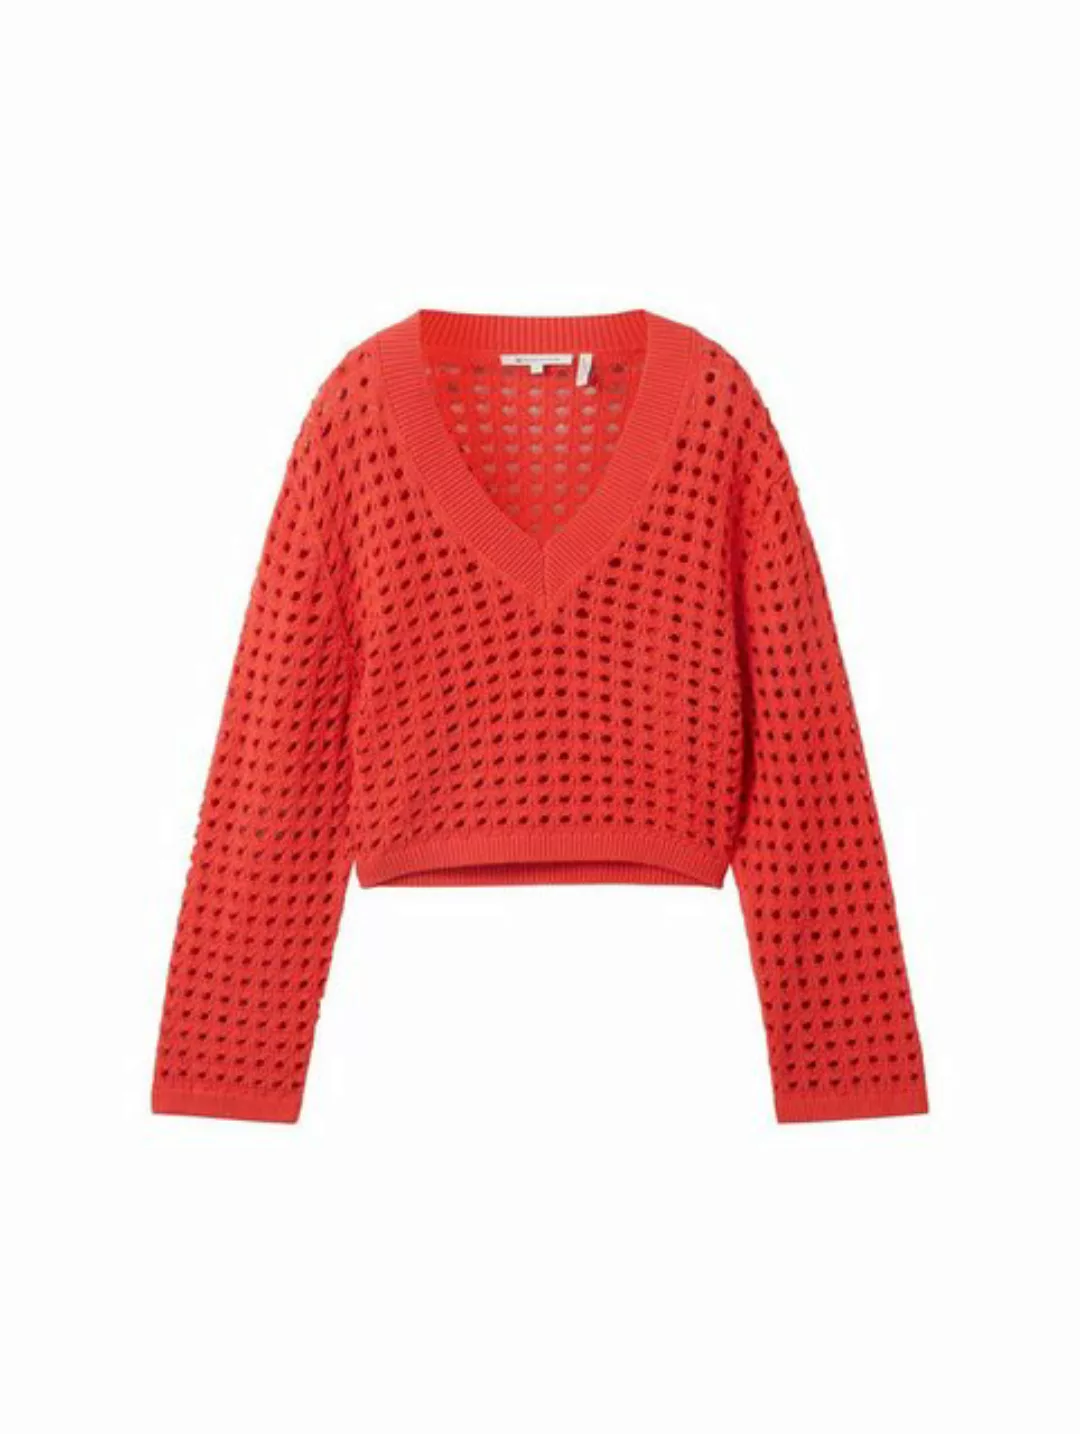 TOM TAILOR Denim Sweatshirt open knit pullover, Plain Red günstig online kaufen